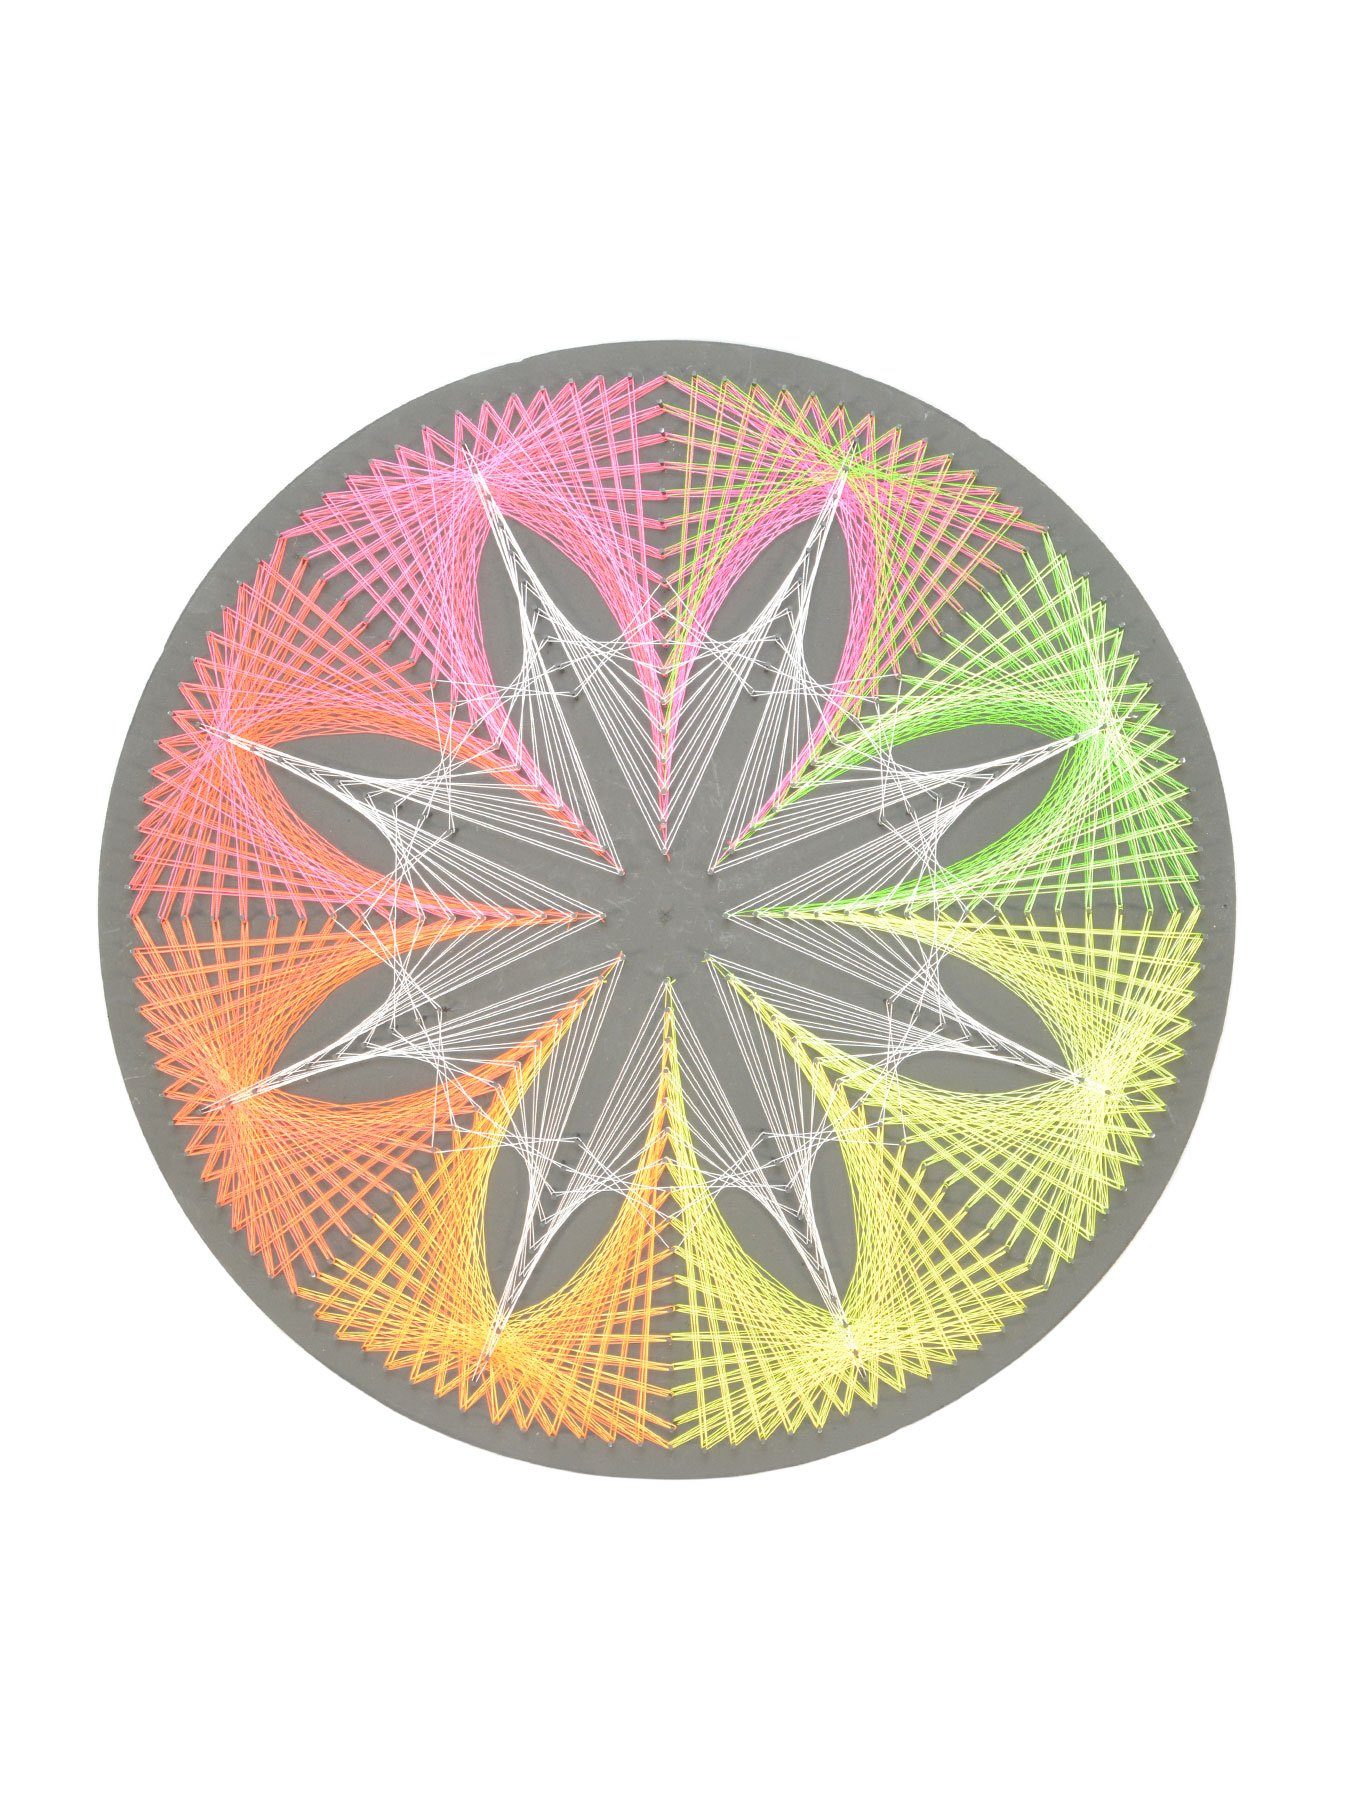 Kreis unter StringArt Dekoobjekt 40cm, UV-aktiv, 2D Schwarzlicht Cornflower", Fadendeko Schwarzlicht "Fluo PSYWORK leuchtet